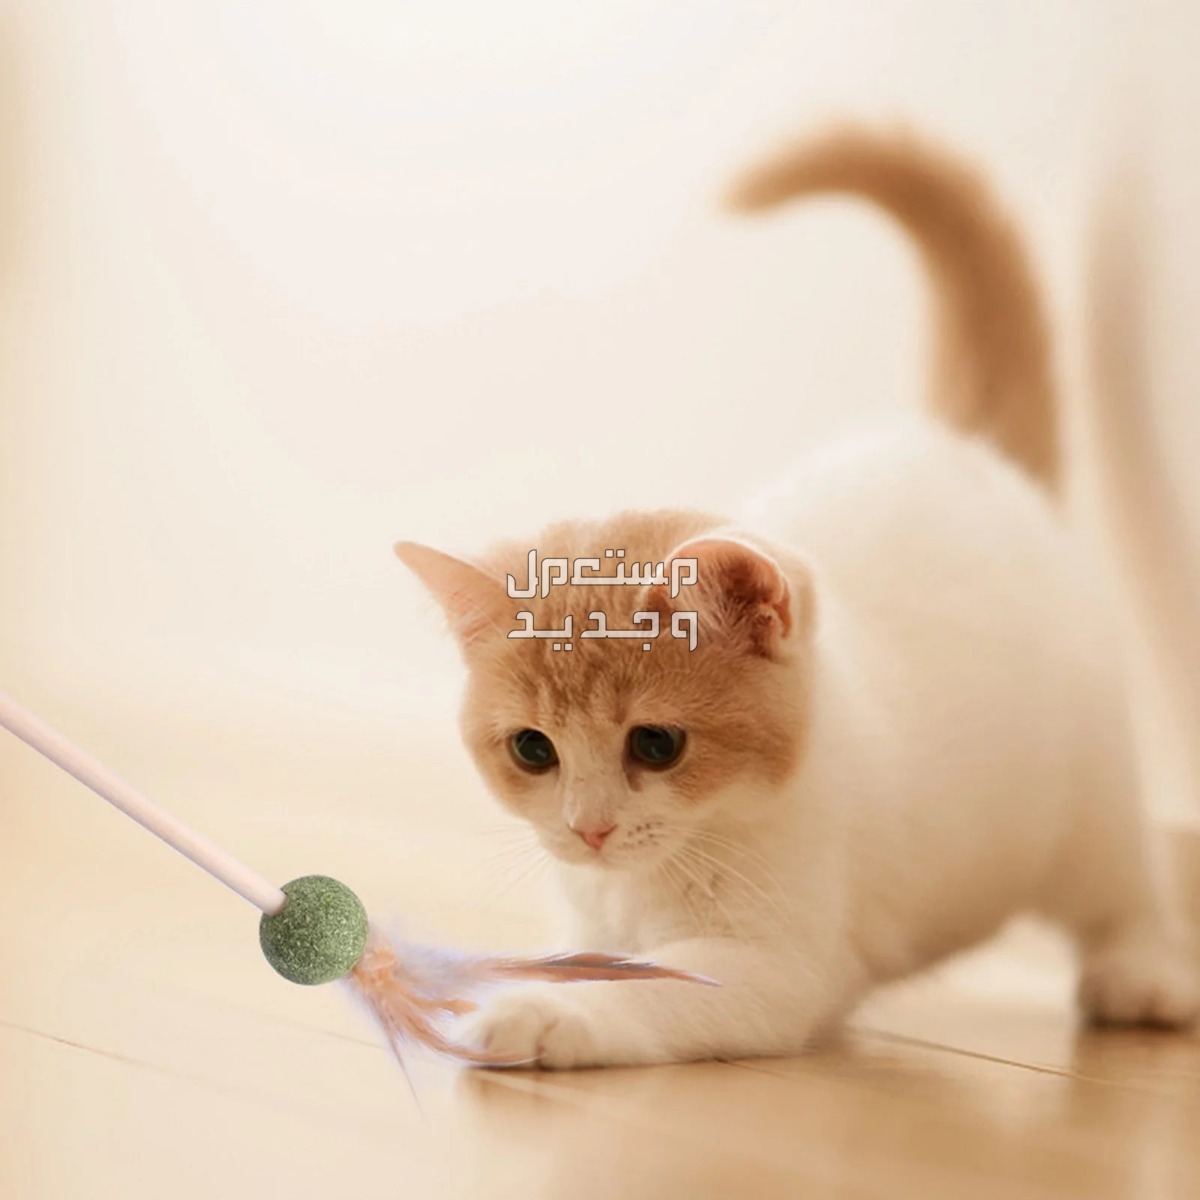 لمحبي القطط - تعرف على أفضل العاب قطط متحركة في الأردن قطة تلعب بالريشة